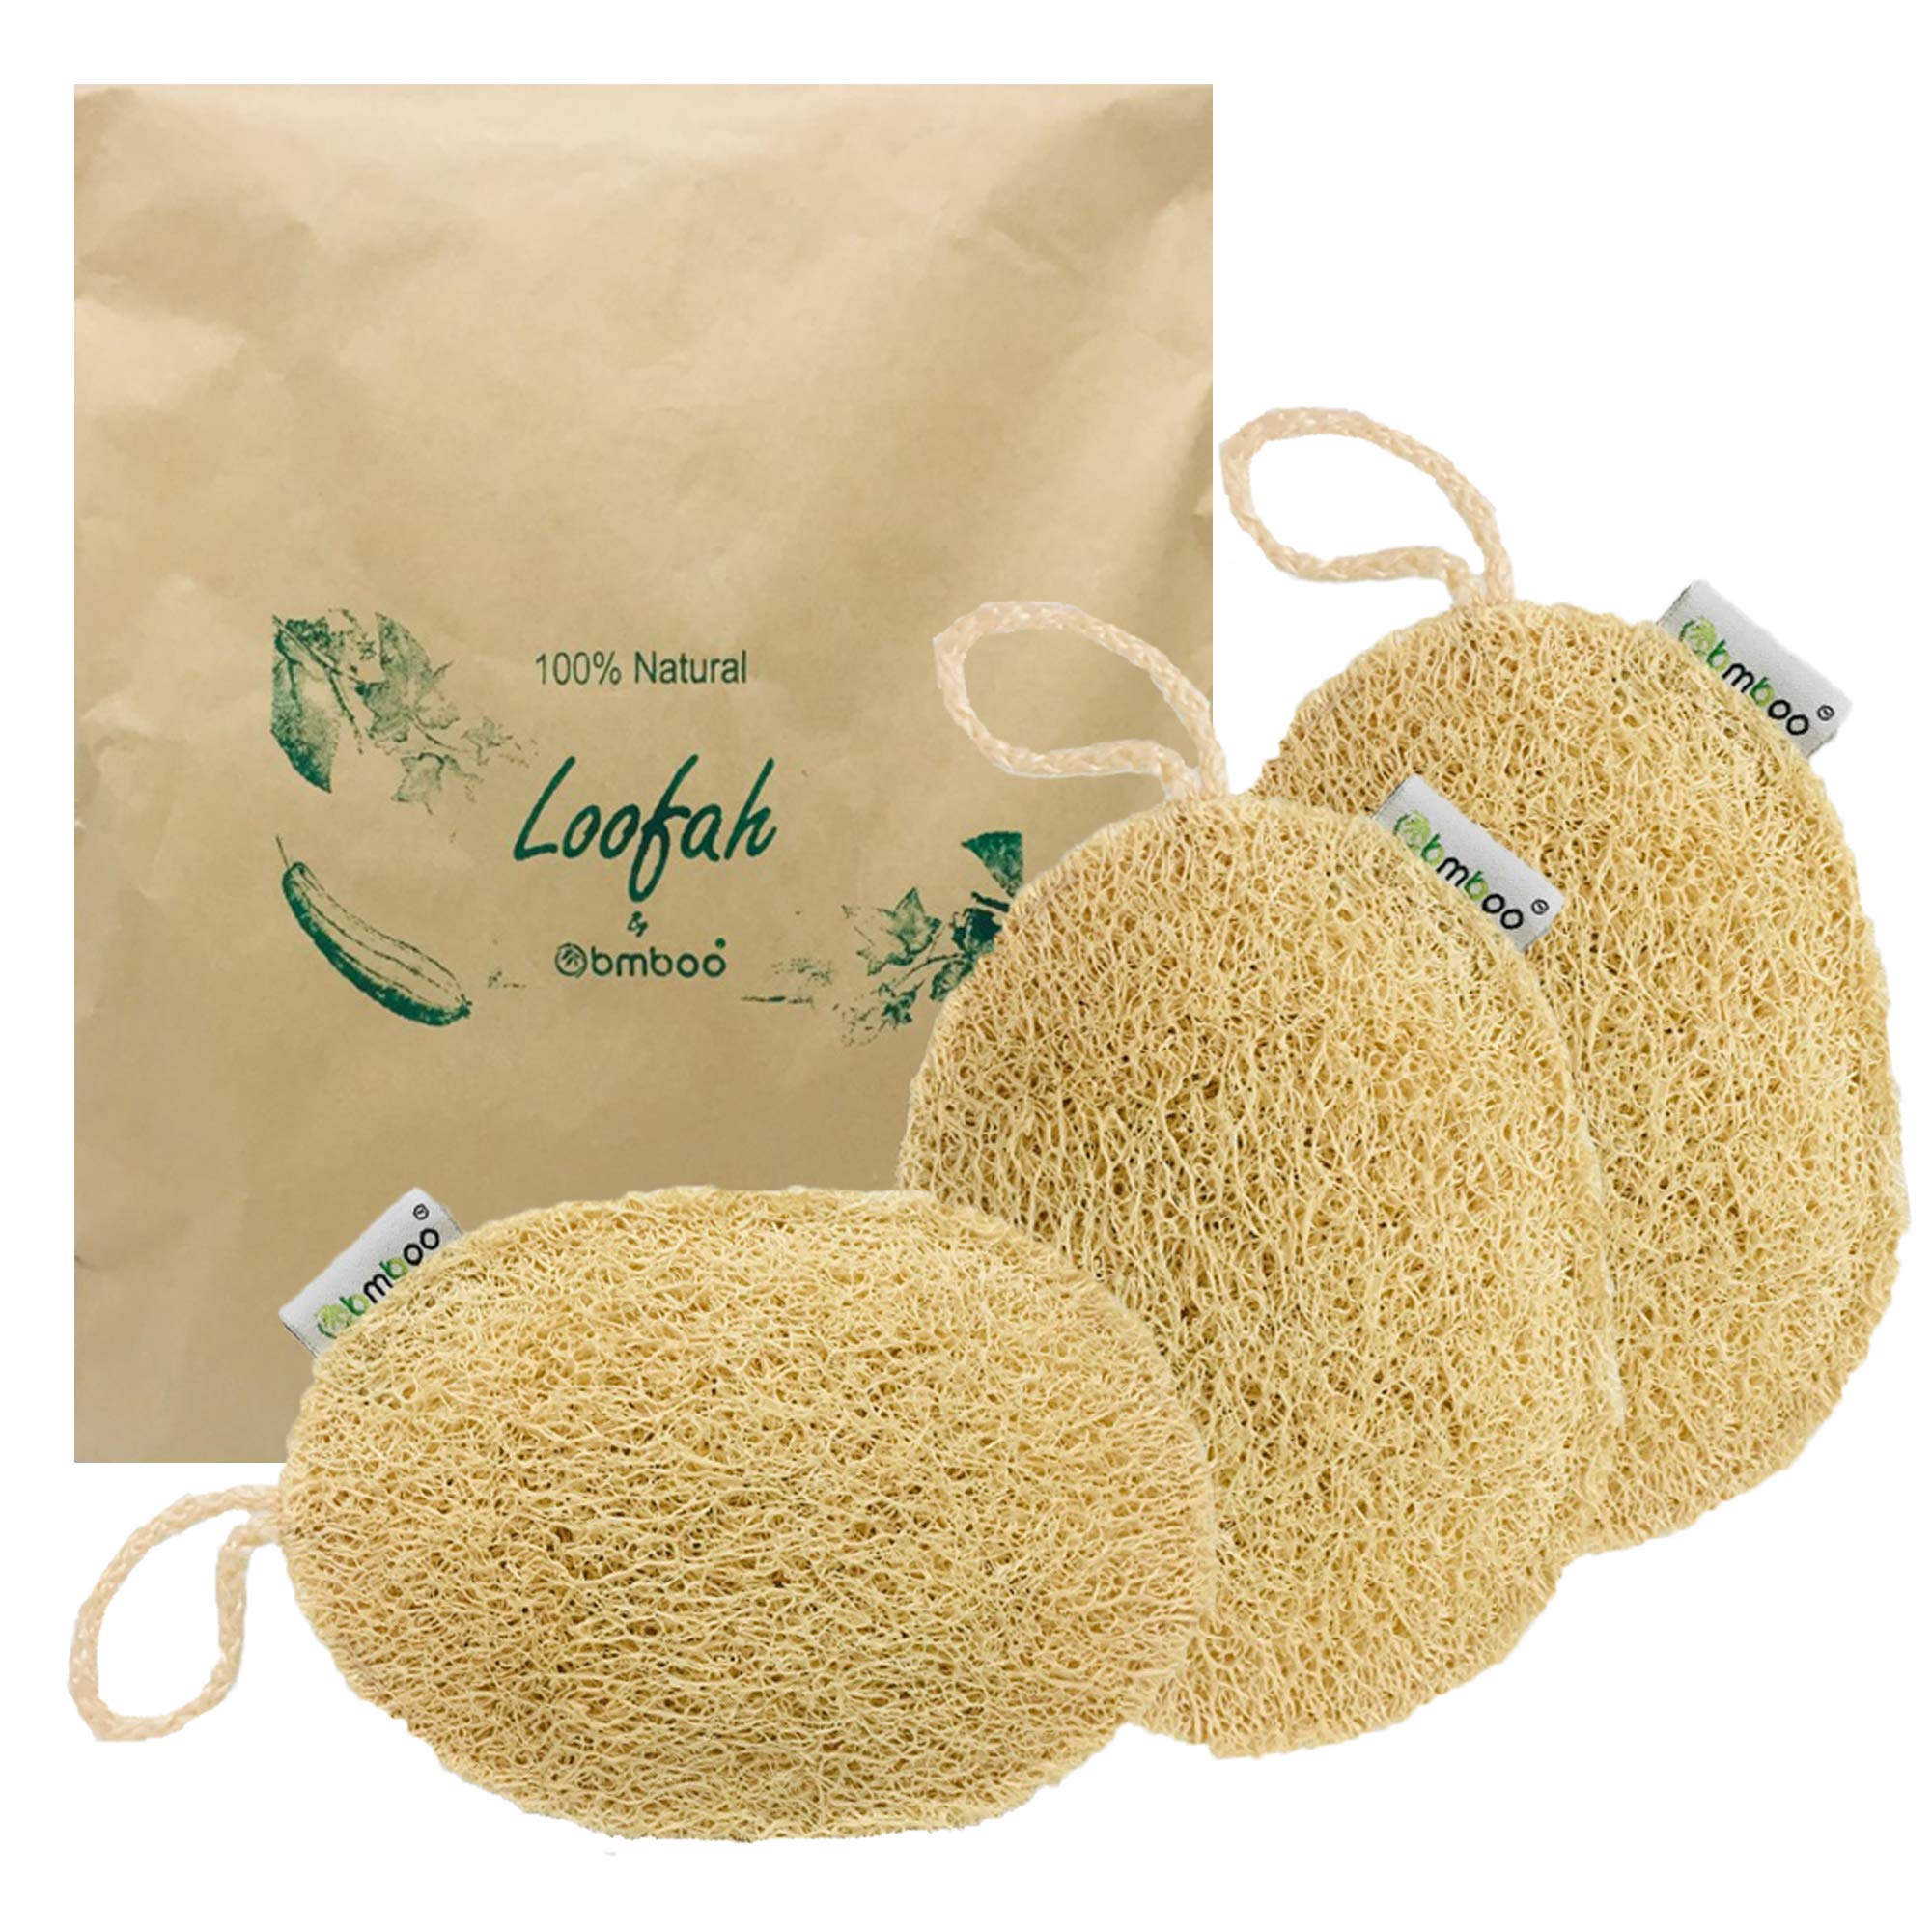 100% Natural Loofah Exfoliating Sponge (3 Pack) - Loofah Body